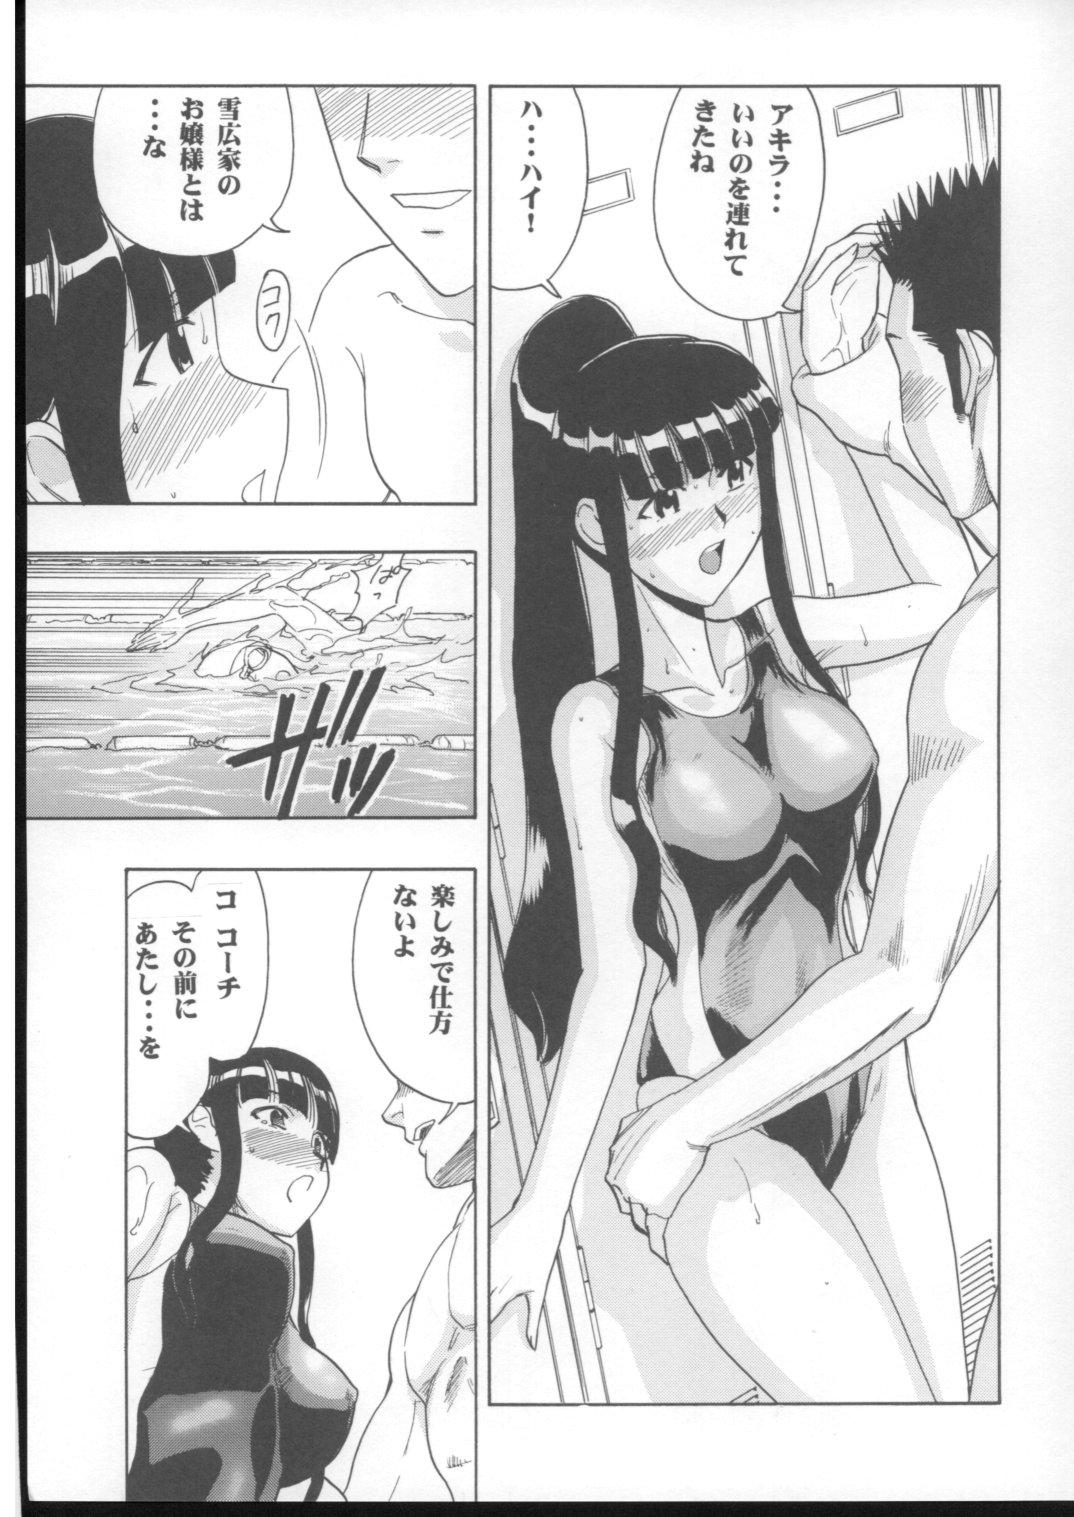 Groping Mahomizu - Mahou sensei negima Gonzo - Page 10